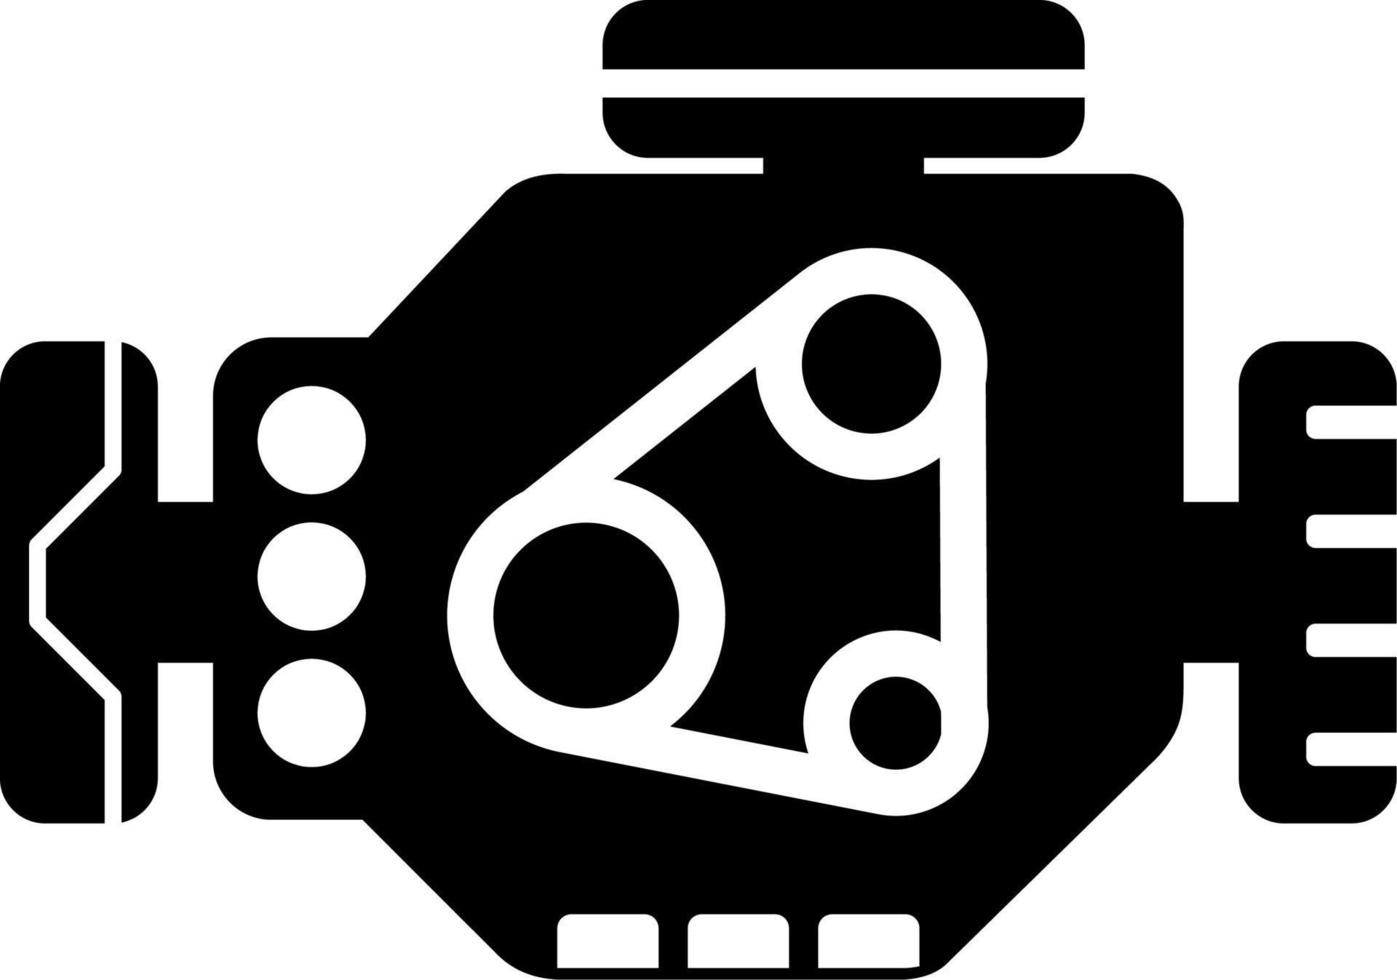 Auto Motor Symbol Vektor. Vektor Illustration von Motor Motor. Single Symbol von Motor zum Design hinsichtlich Fahrzeug, Technologie, Transport, Wissenschaft und Geschwindigkeit